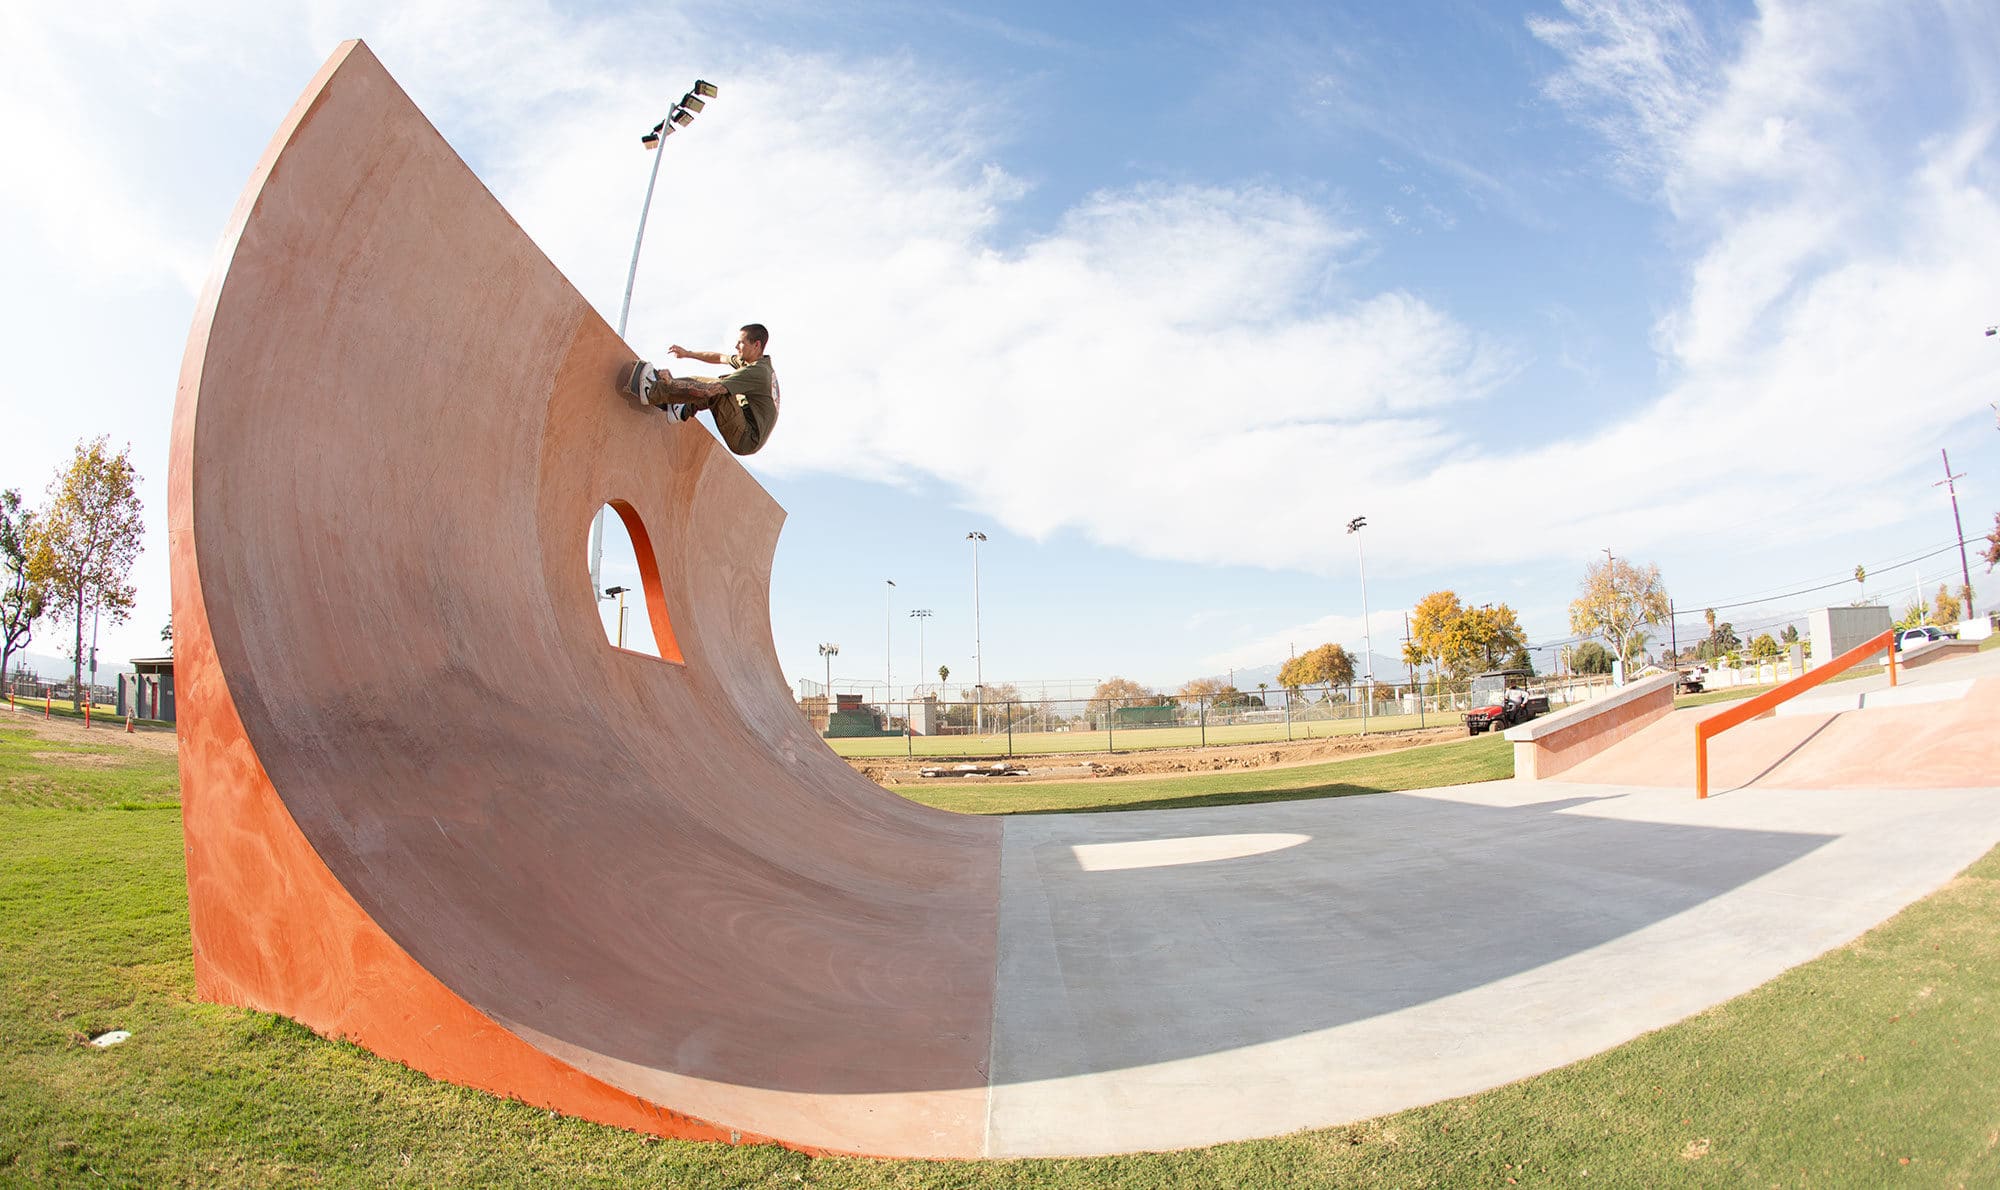 Craig Edwards Frontside Grind over the La Puente Skatepark Beast Designed and Built by Spohn Ranch